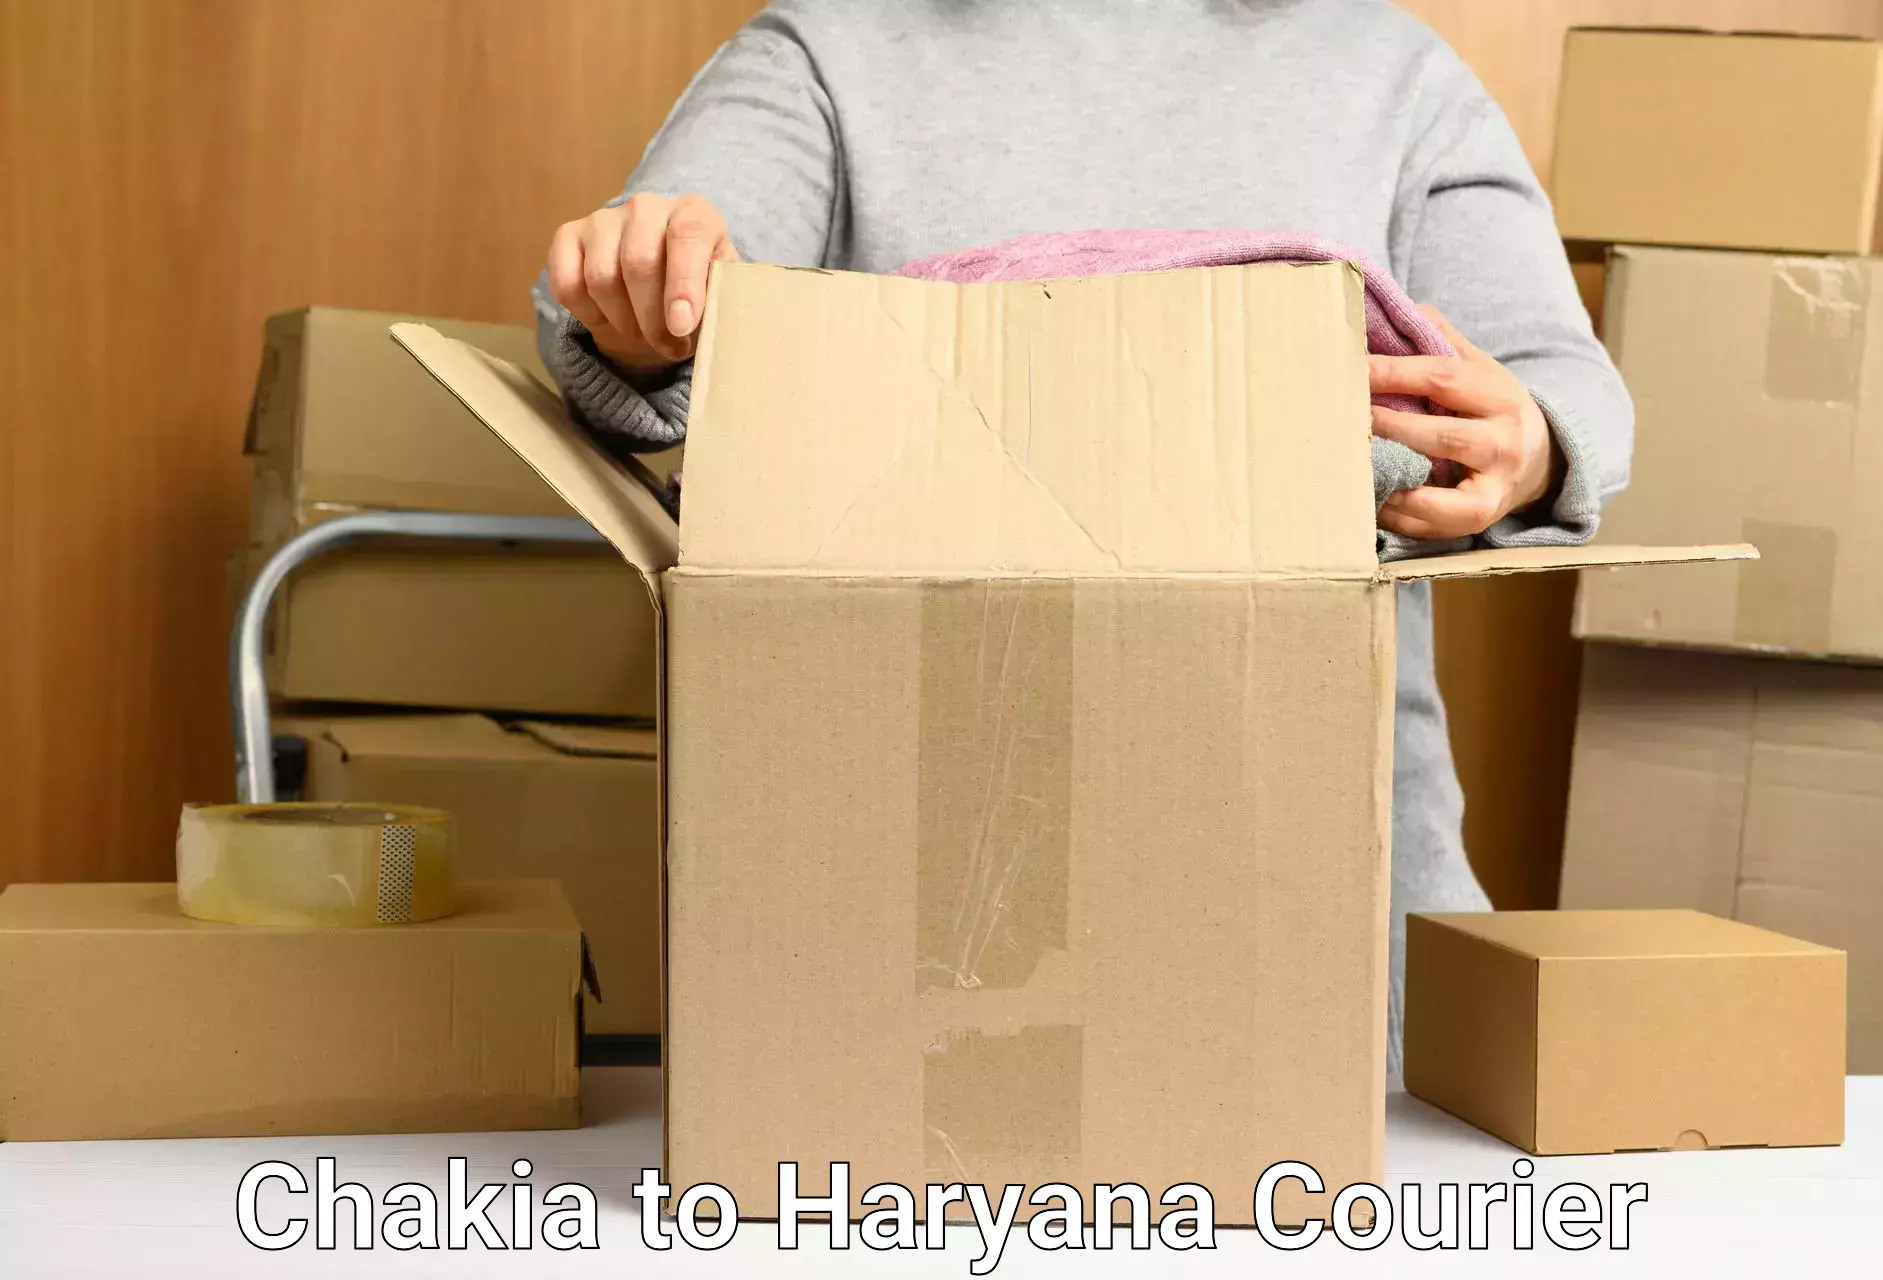 Comprehensive logistics solutions Chakia to NCR Haryana